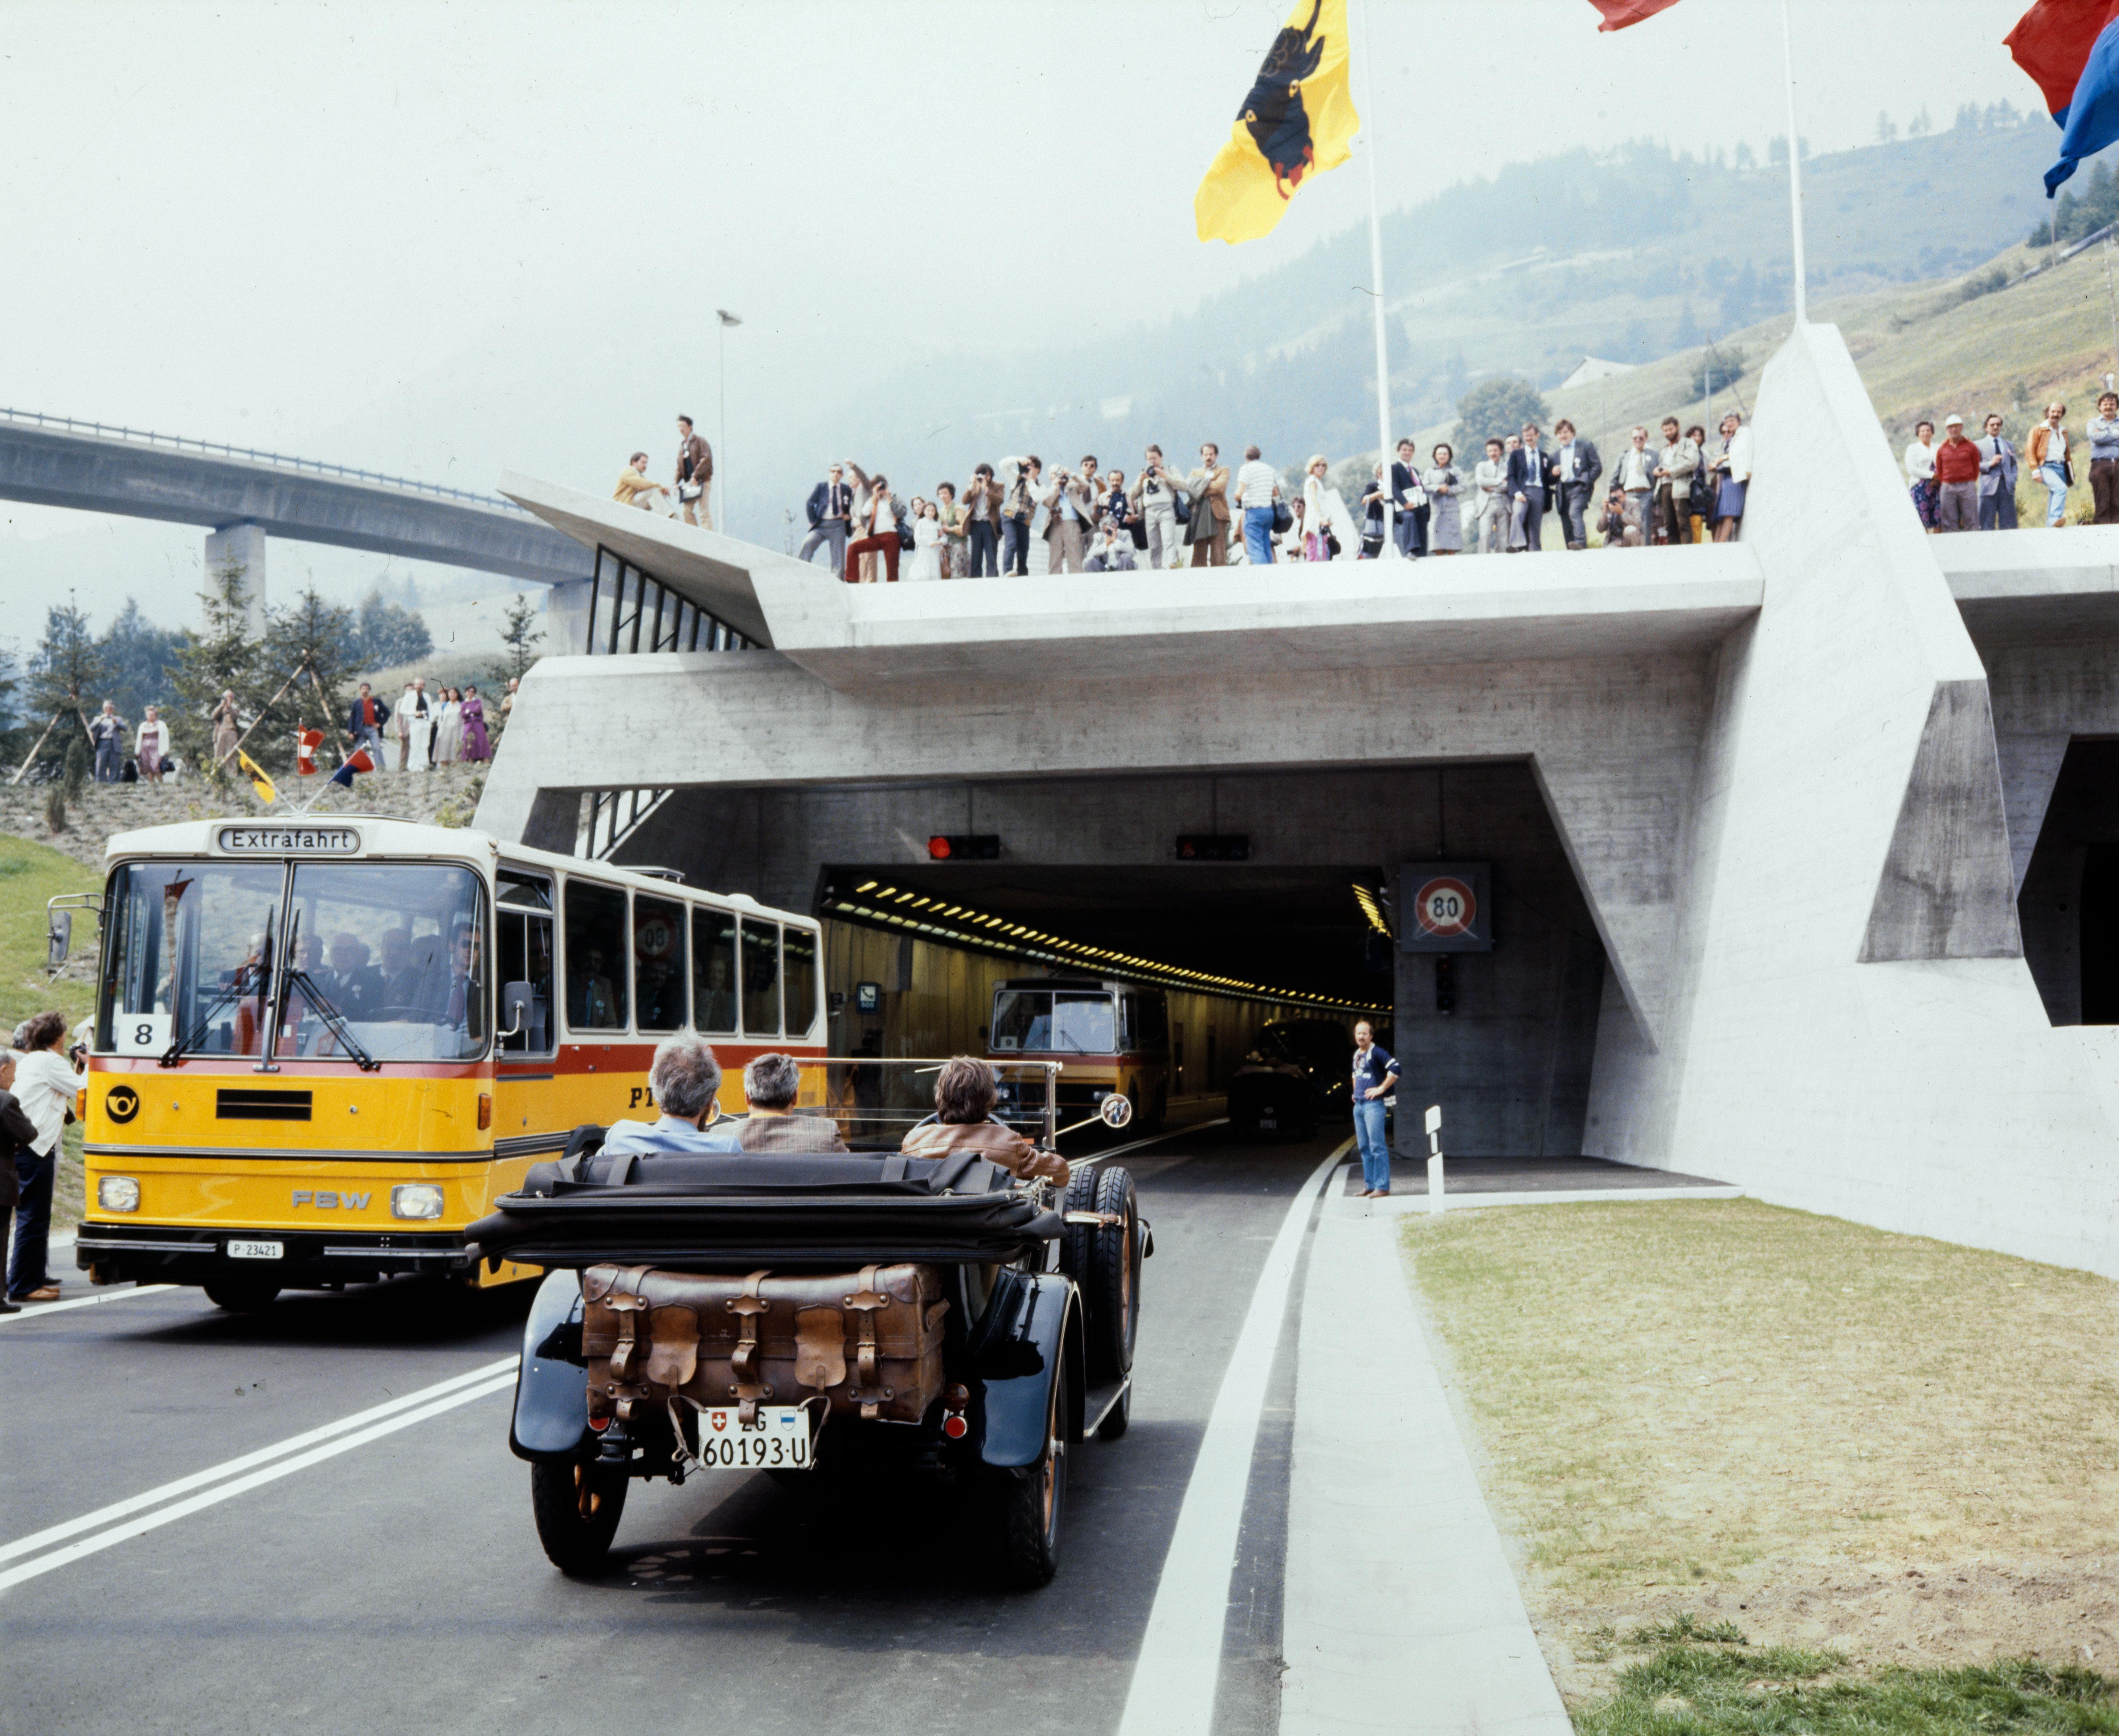 Am 5. September 1980, als der Gotthard-Strassentunnel eröffnet wurde, blickte man auf ein Ingenieursmeisterwerk zurück, das 10 Jahre Bauzeit und 20 Jahre Planung in Anspruch genommen hatte. Der Entwurf des Tunnels stammte von Giovanni Lombardi.